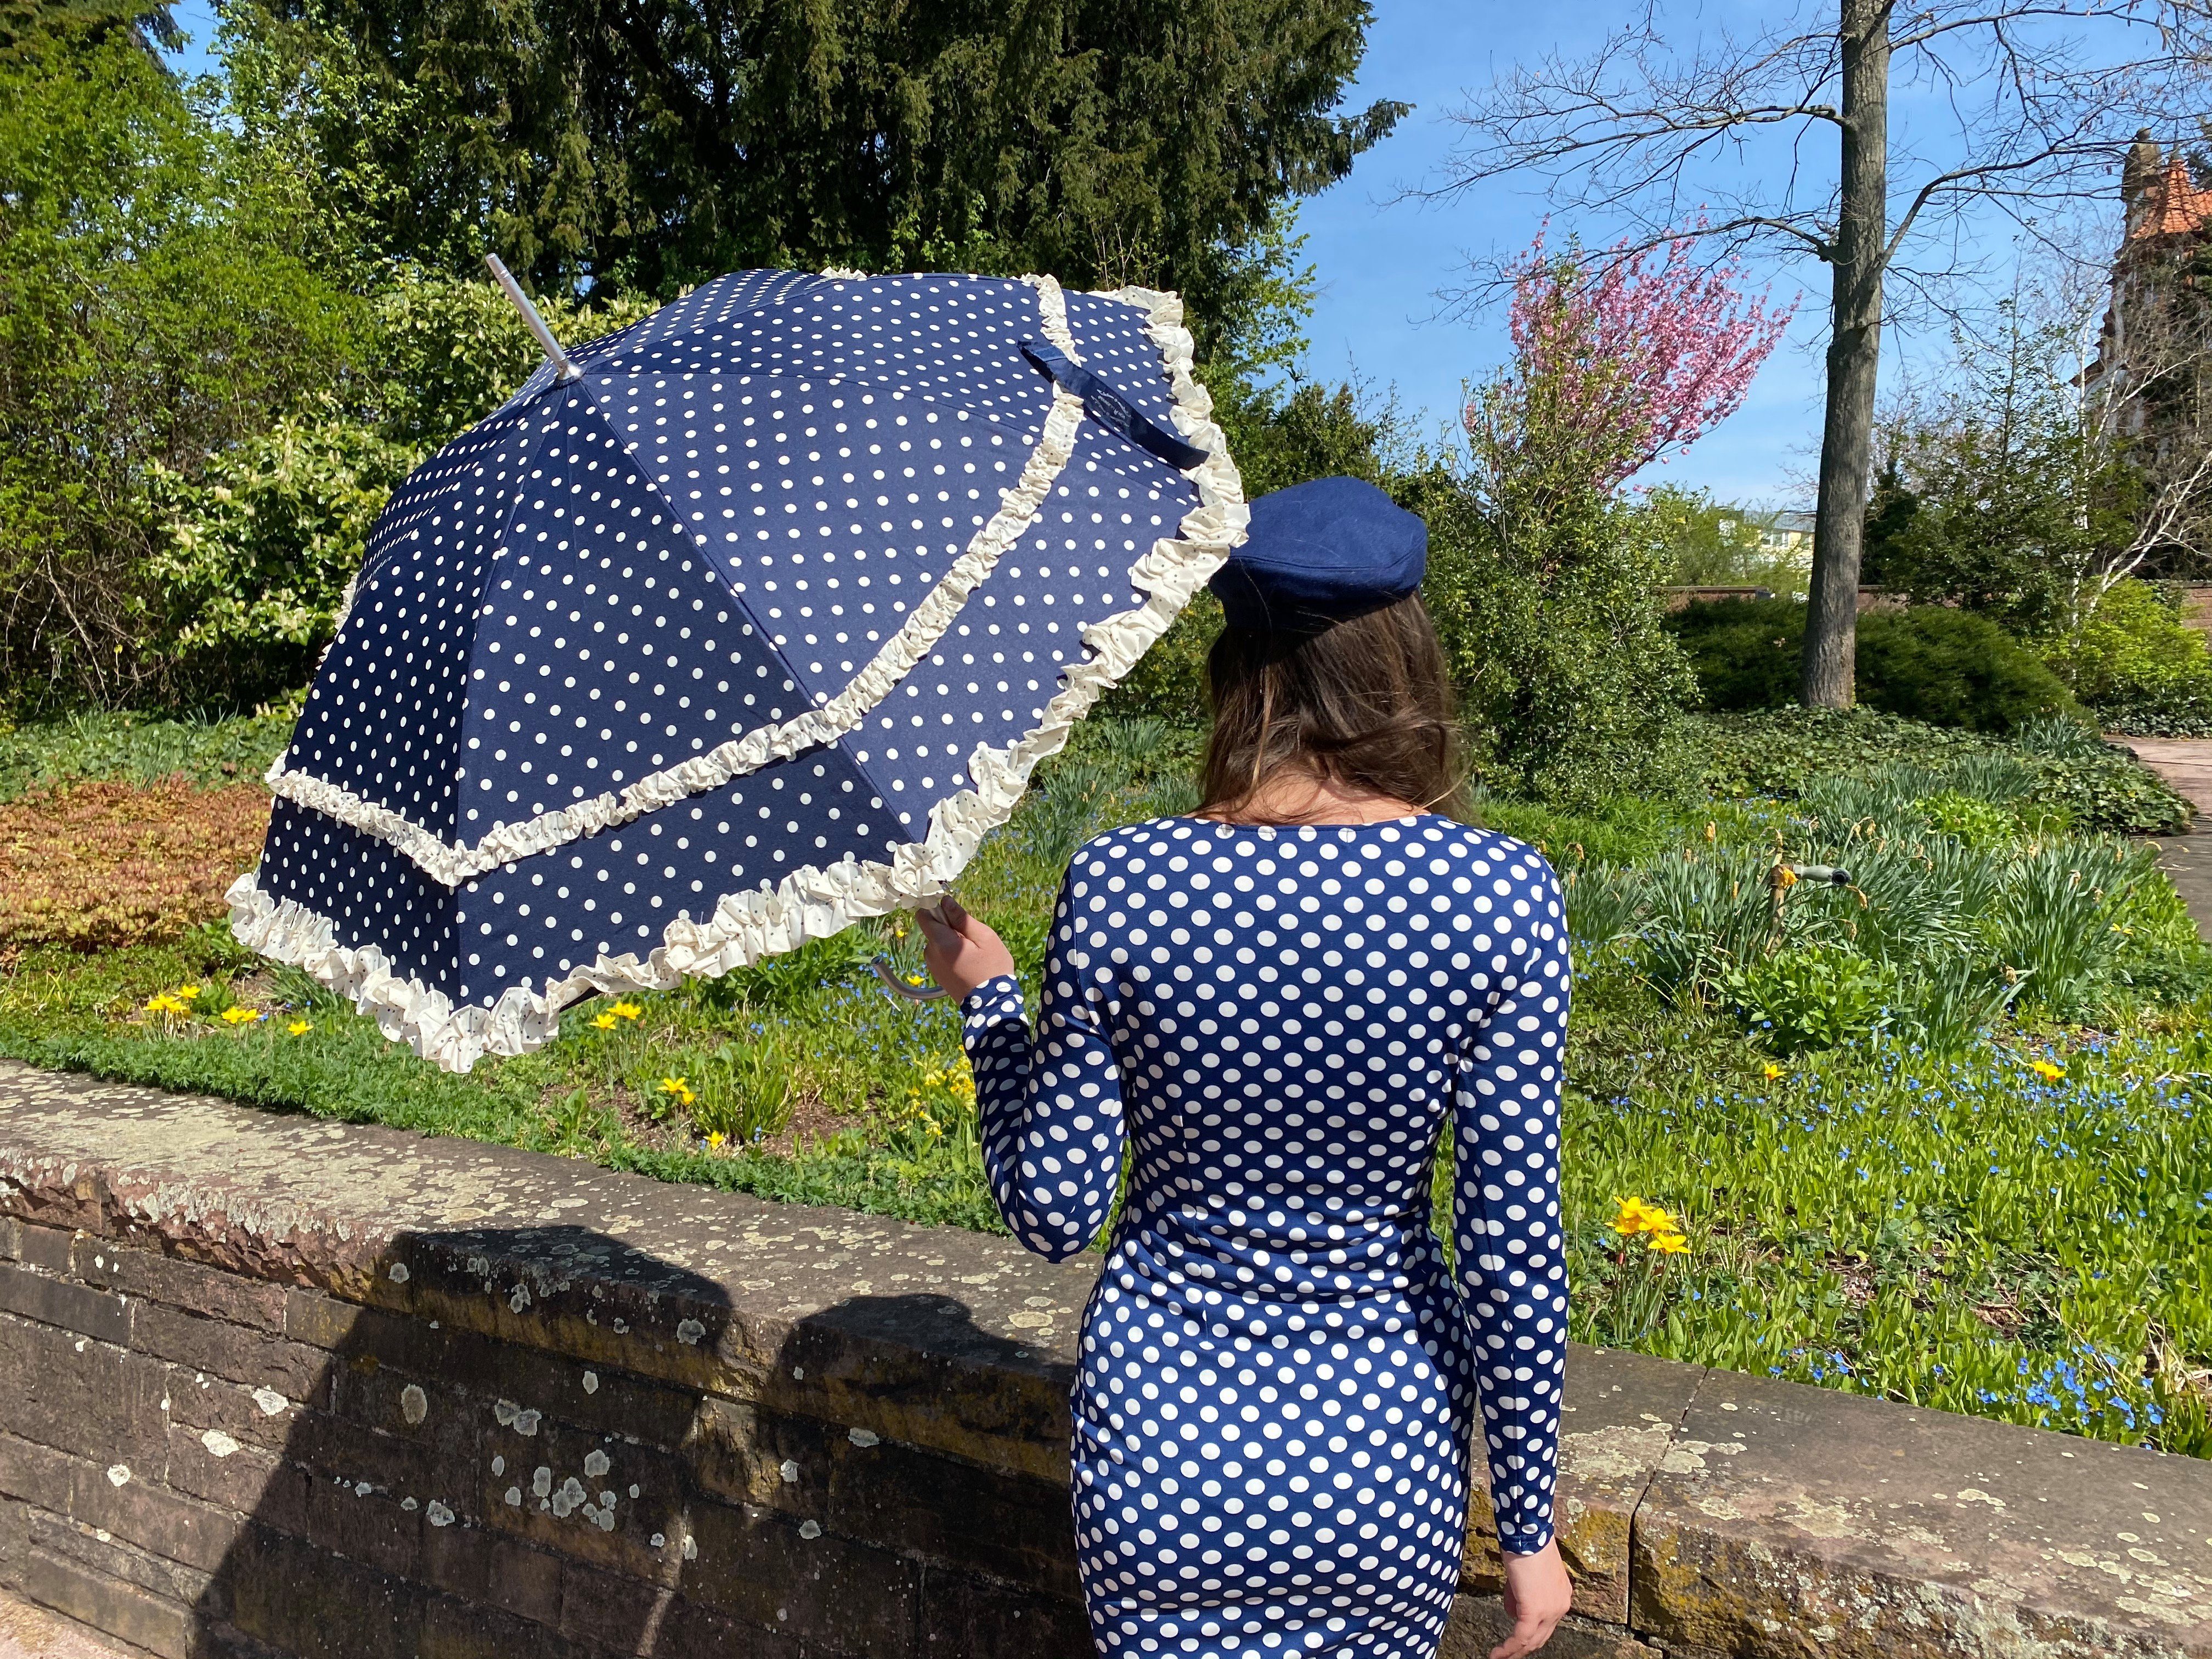 von Lilienfeld Mary, Sonnenschirm zwei Hochzeitsschirm creme Rüschenkanten in mit Punkten Stockregenschirm blau Regenschirm